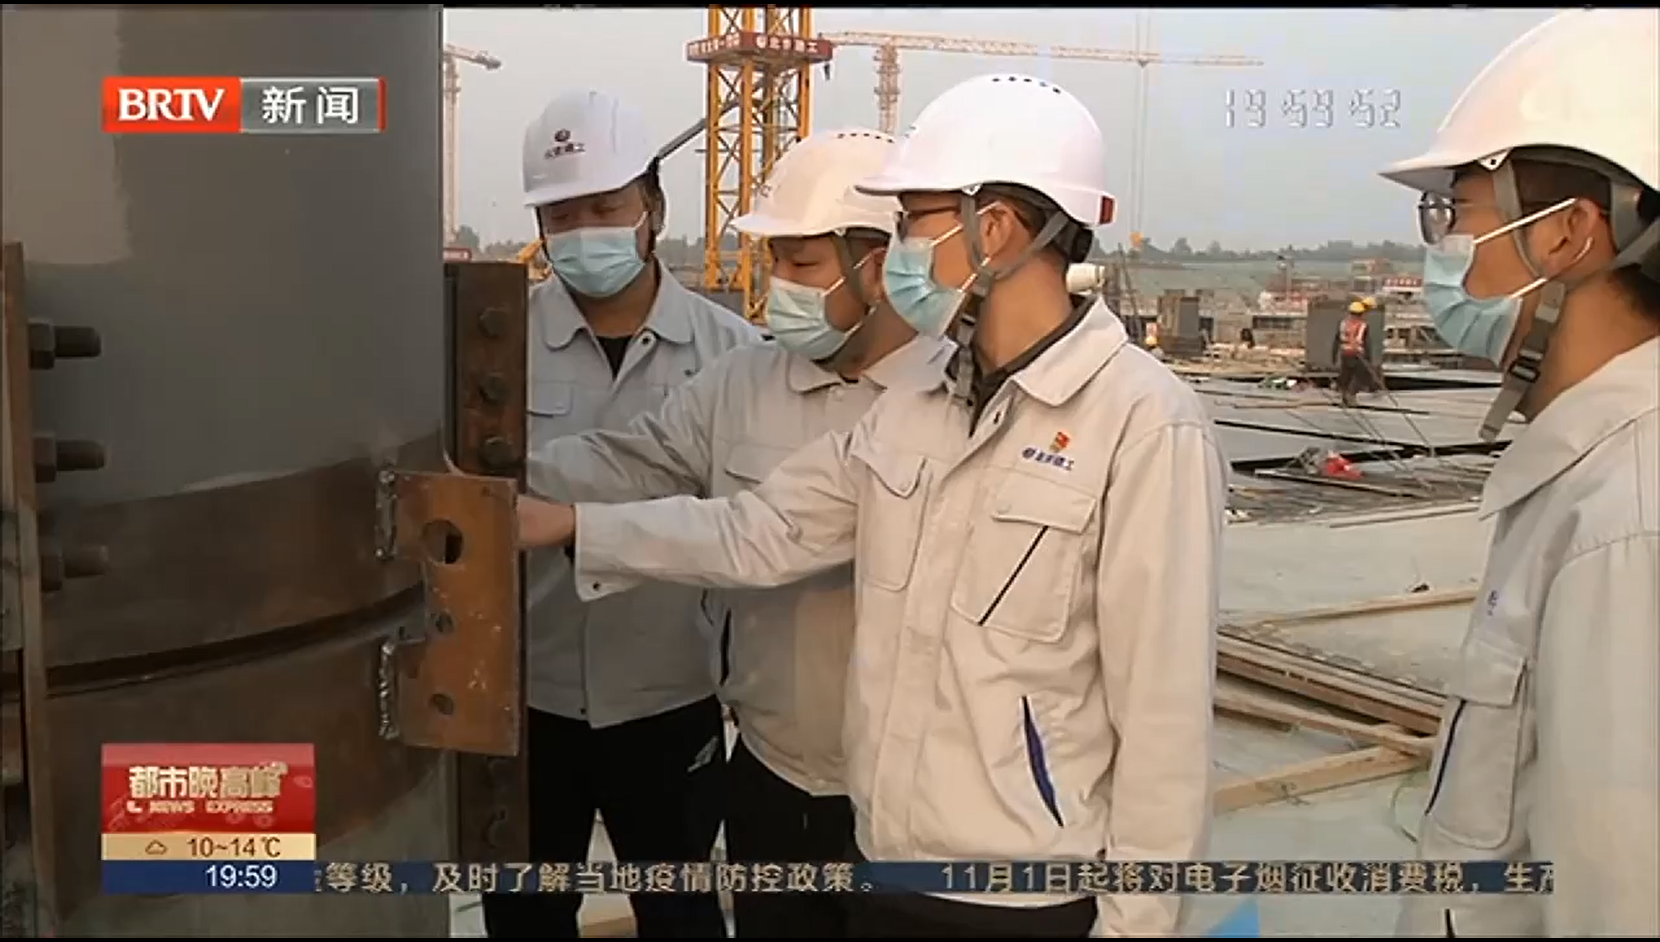 [都市晚高峰]新國展二期工程東區部分完成首根鋼梁吊裝_2022-10-27_20_18_48